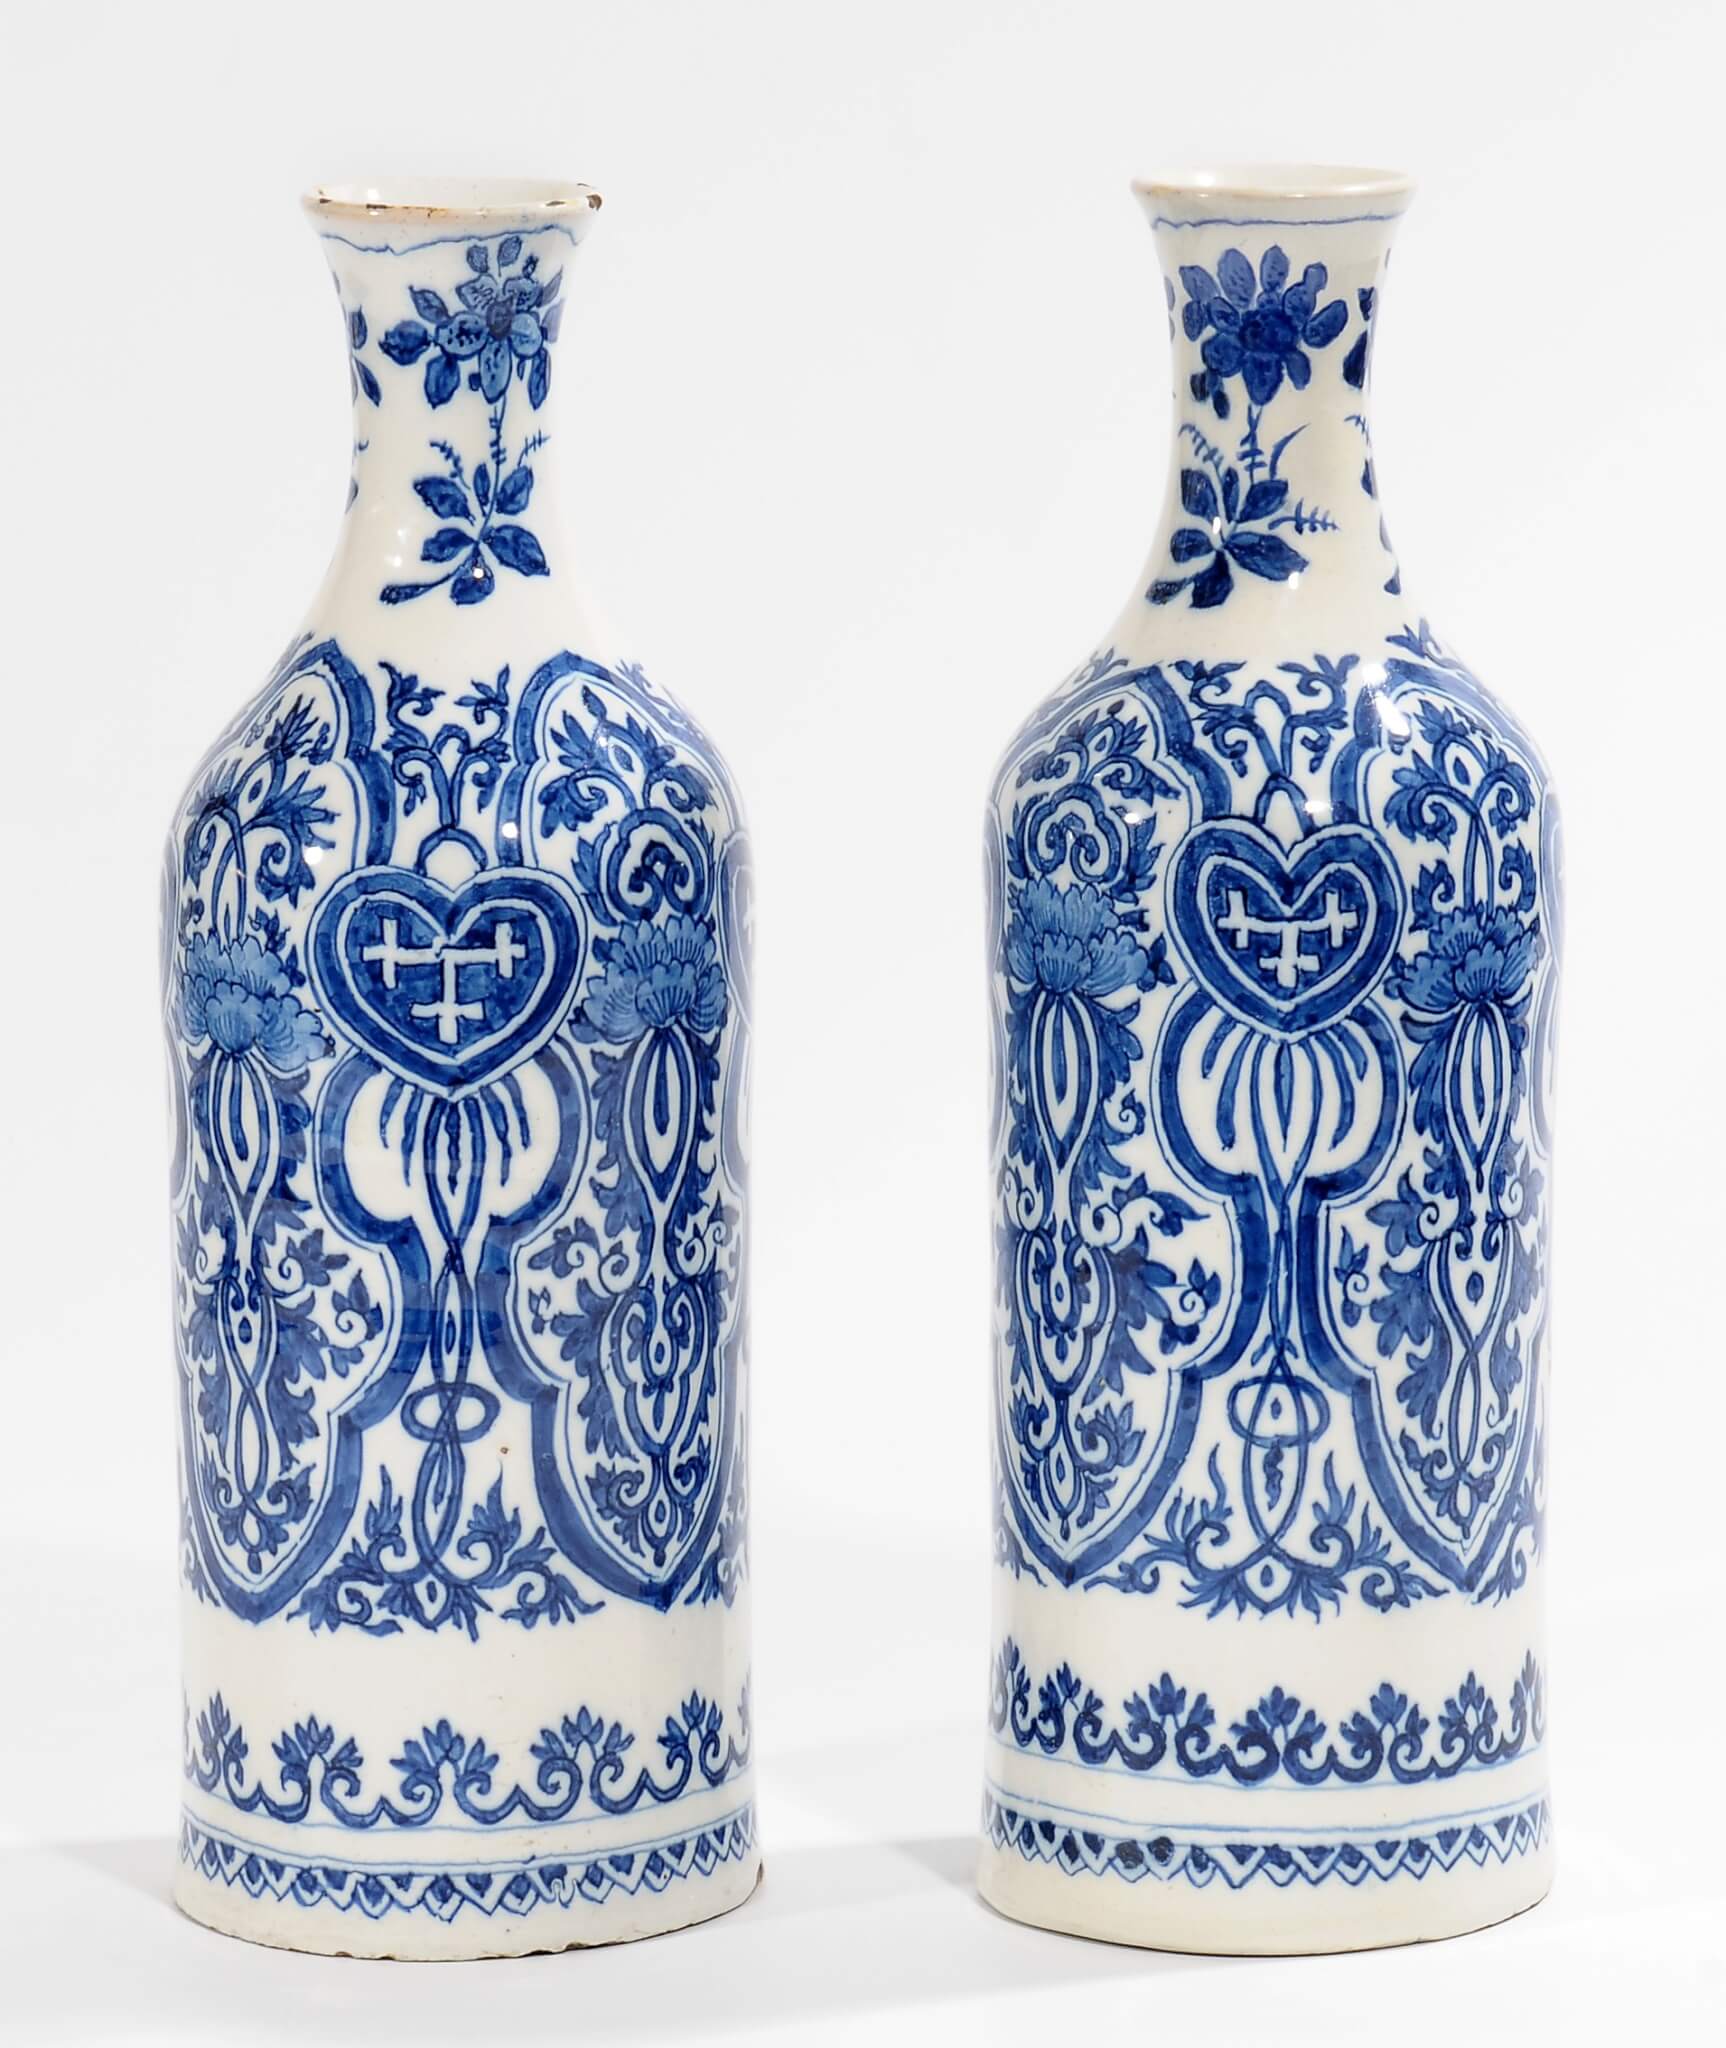 Pair of bottle vases